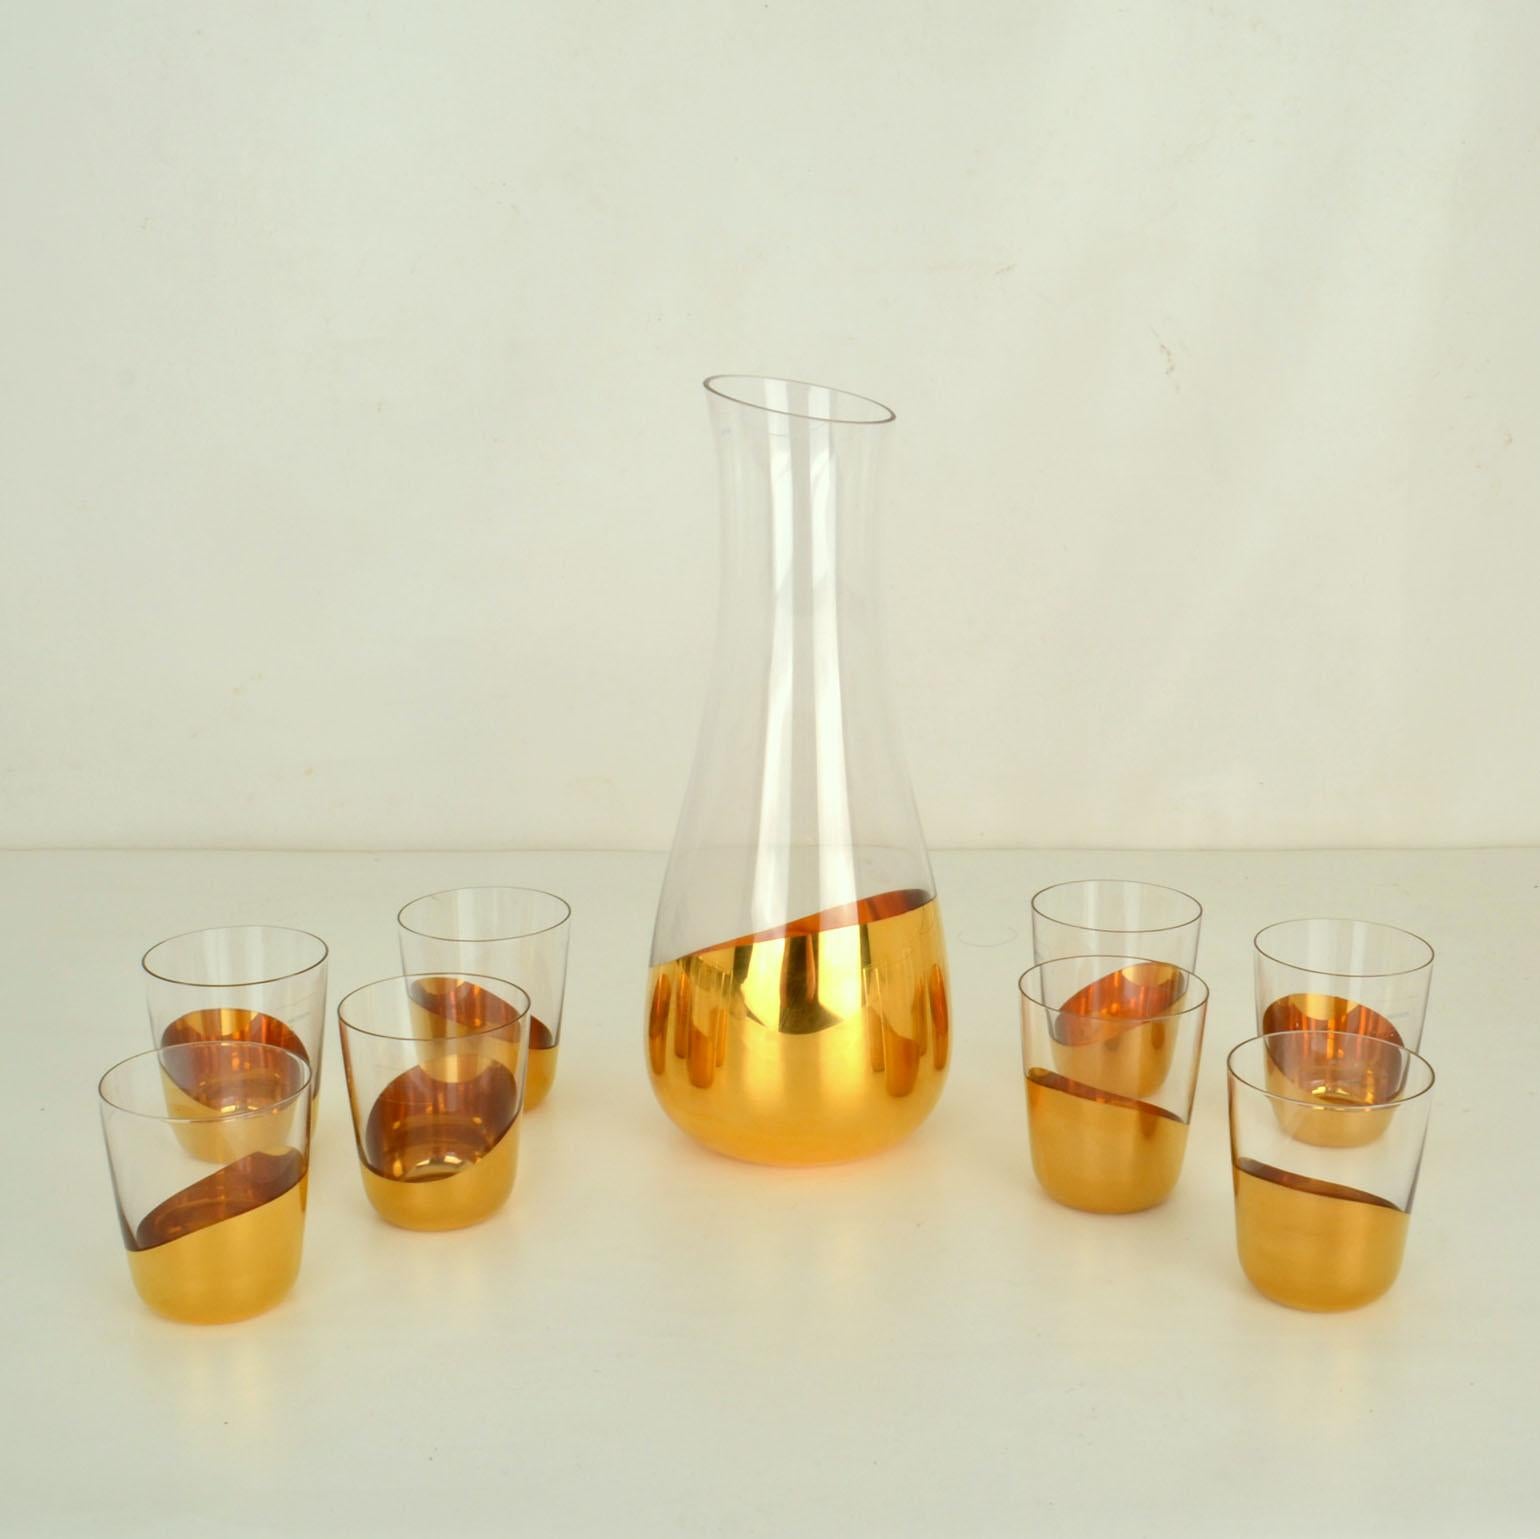 Deux carafes en verre soufflé et dix verres à eau trempés dans l'or par Front for Skitch, Italie 2010.
L'ensemble de verres et de carafes Midas propose une version contemporaine et ironique de la verrerie de luxe. Trempés dans un bain d'or, ils